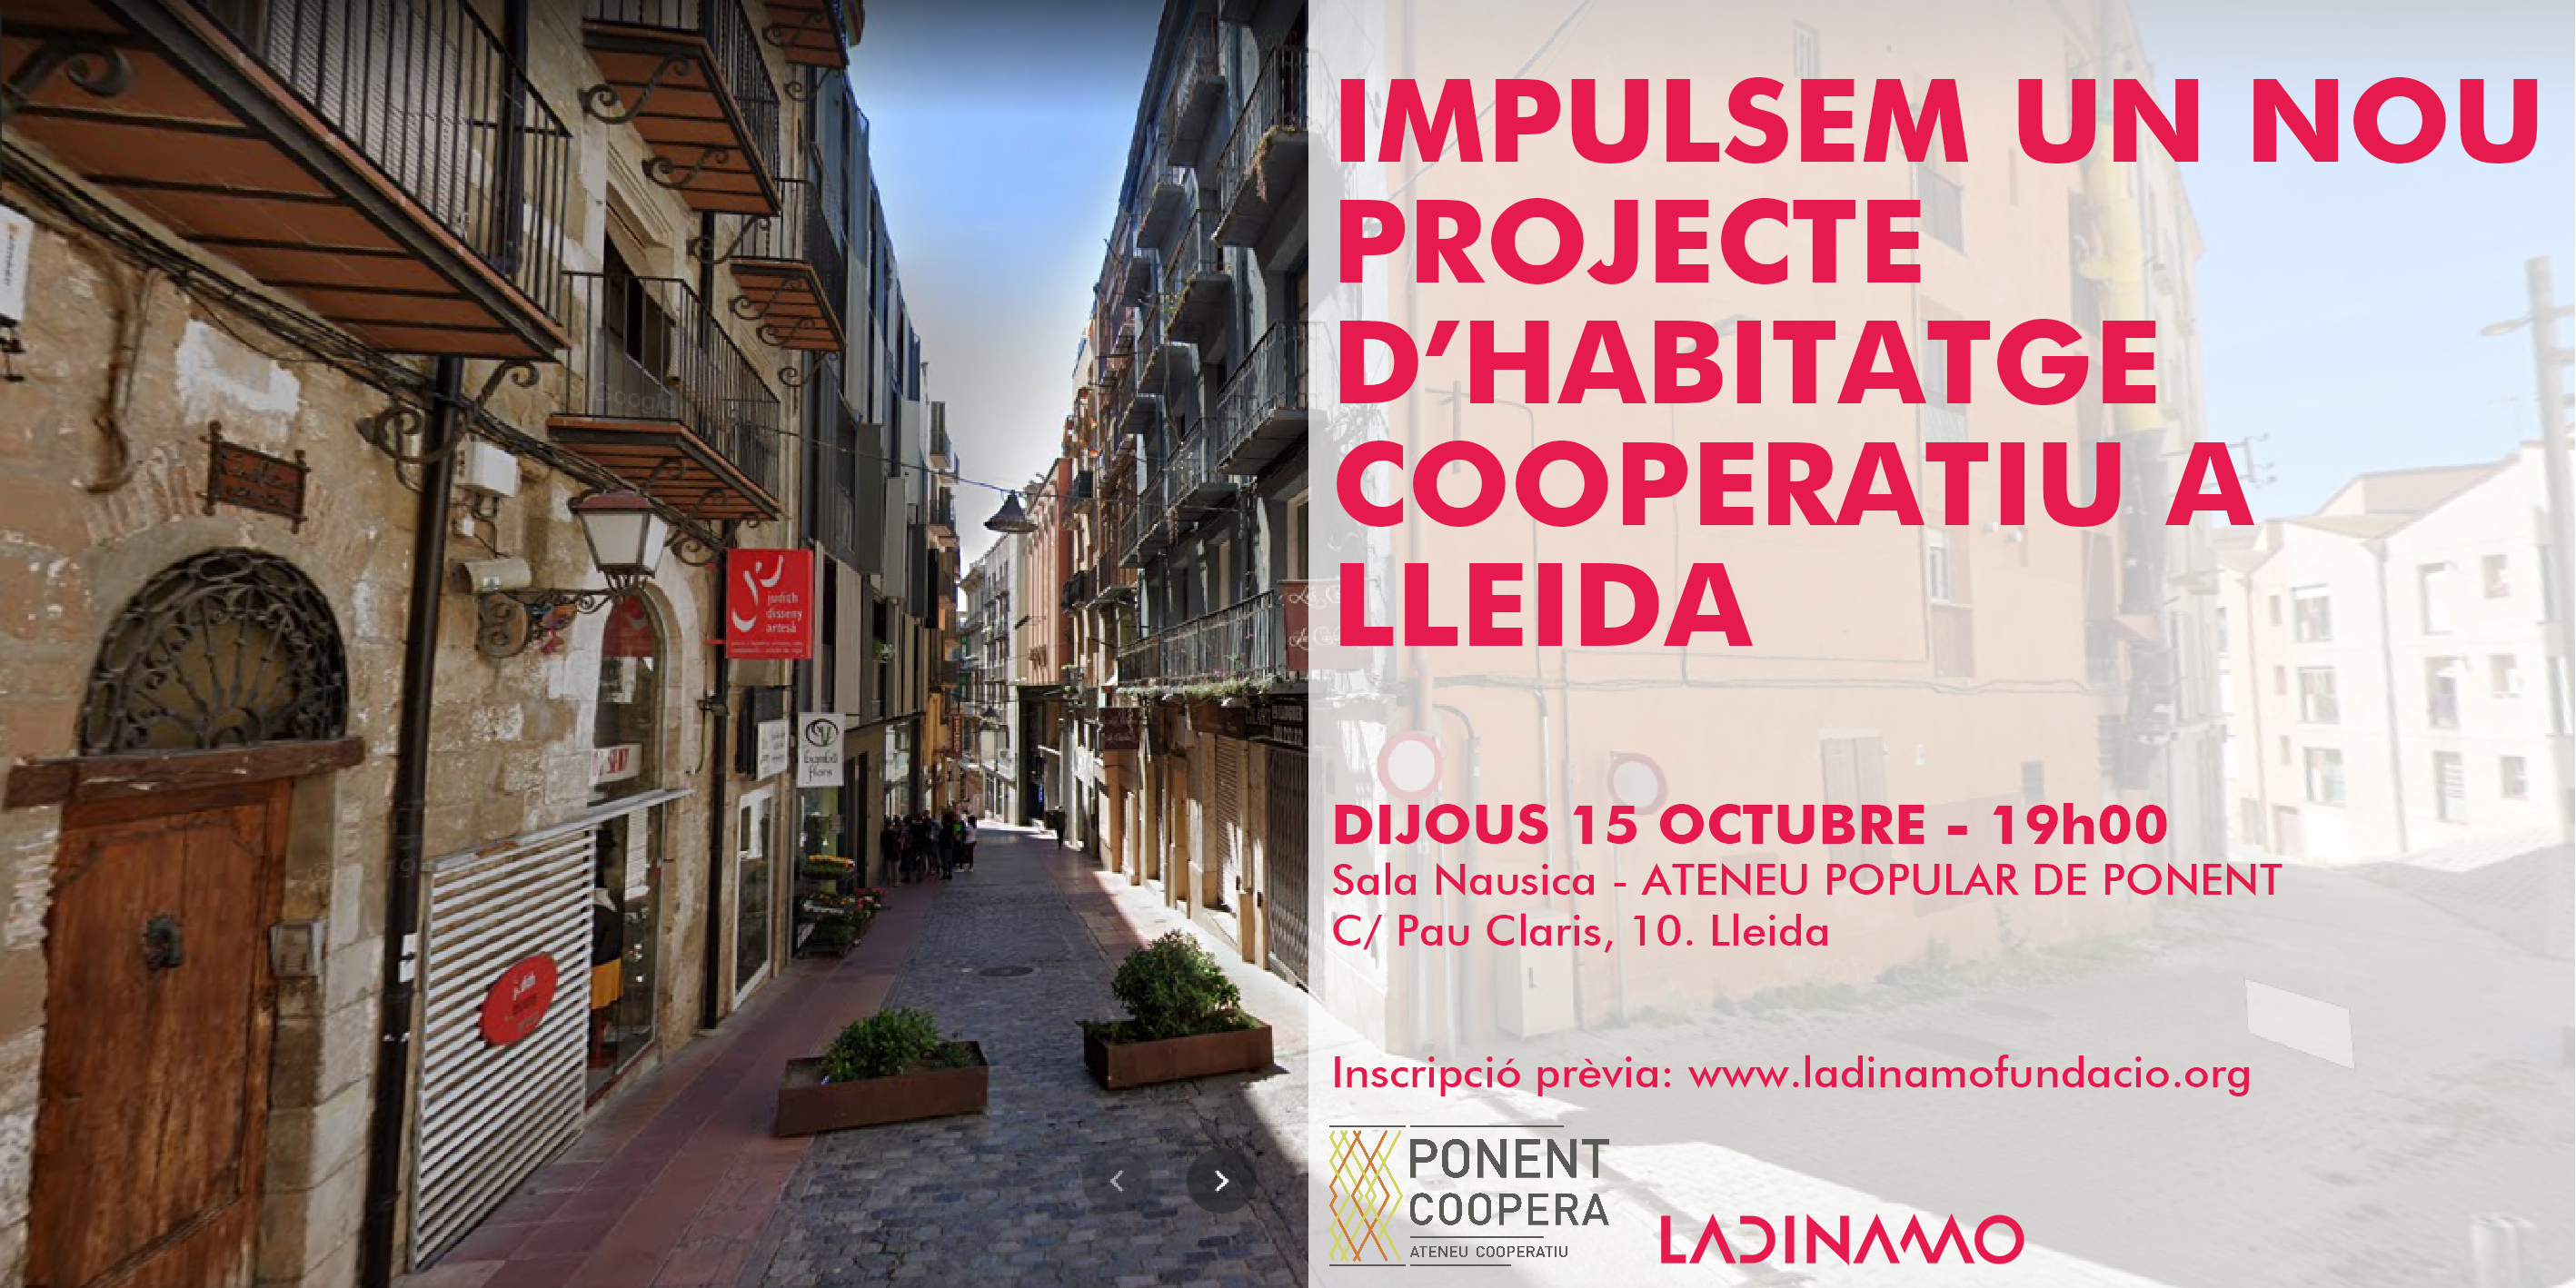 Impulsem un nou projecte d’habitatge cooperatiu a Lleida